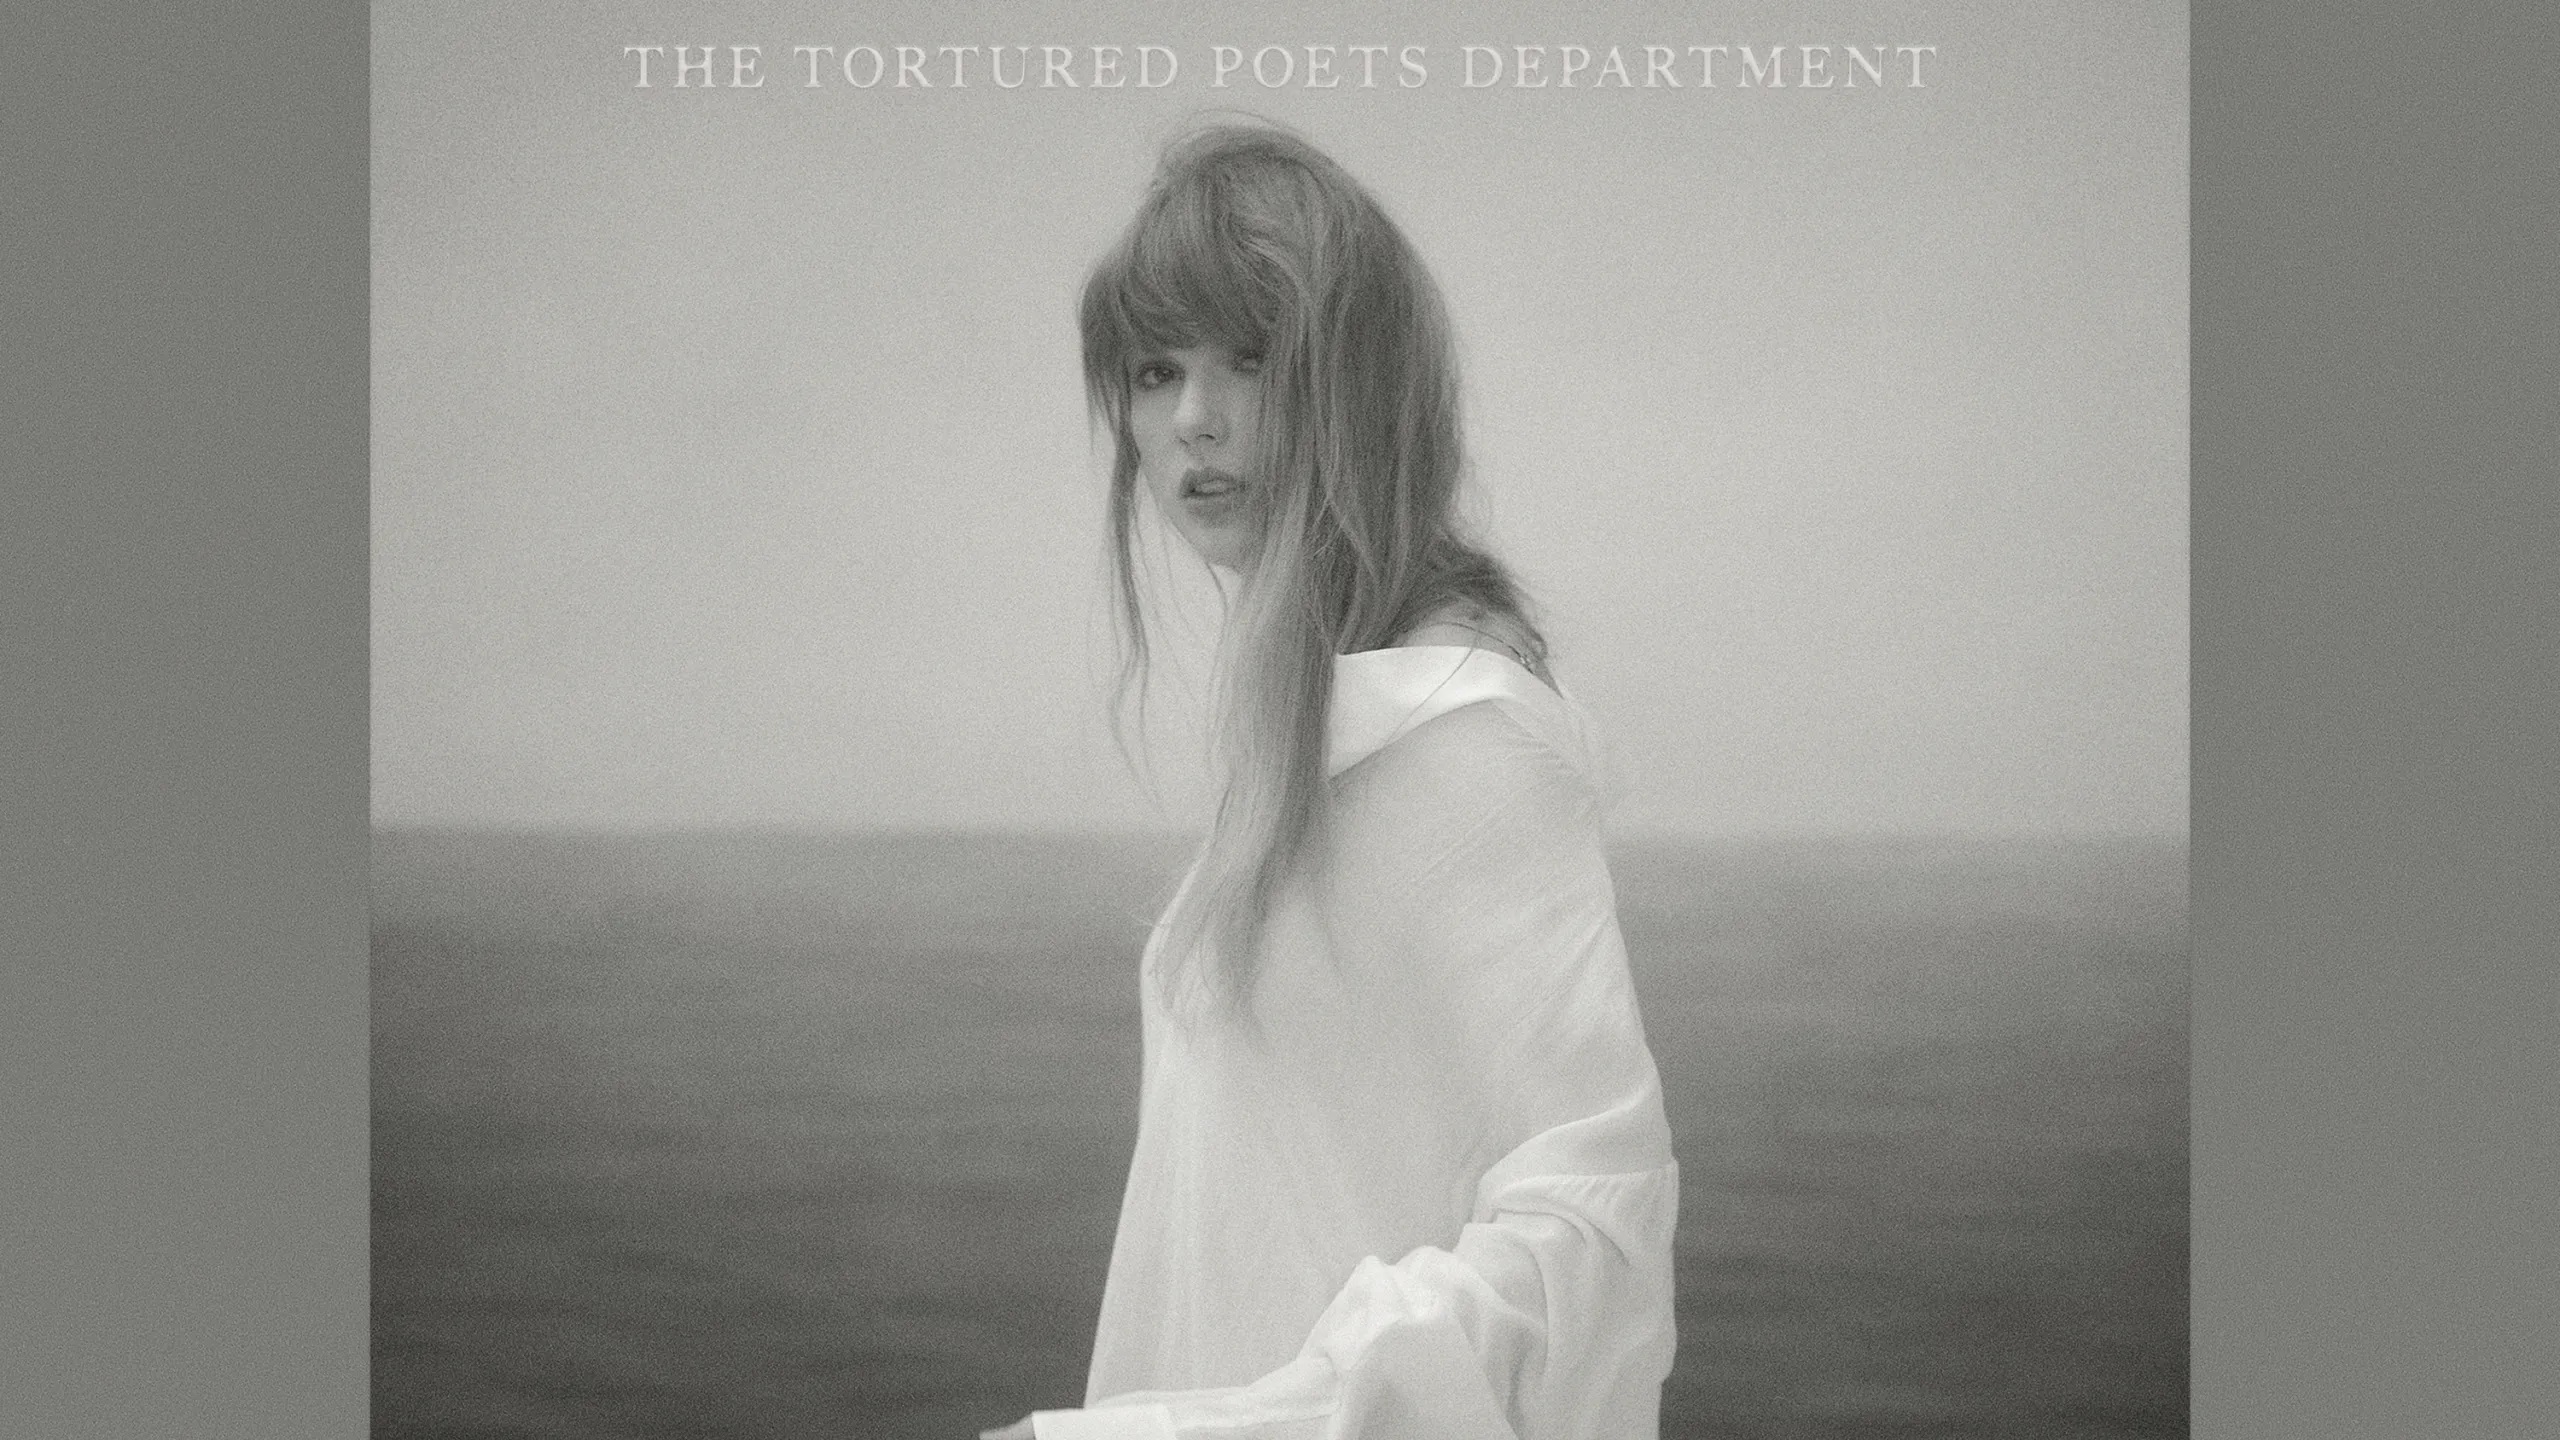 Taylor Swift mặc áo sơ mi trắng trong hình ảnh bìa album The Tortured Poets Department TTPD